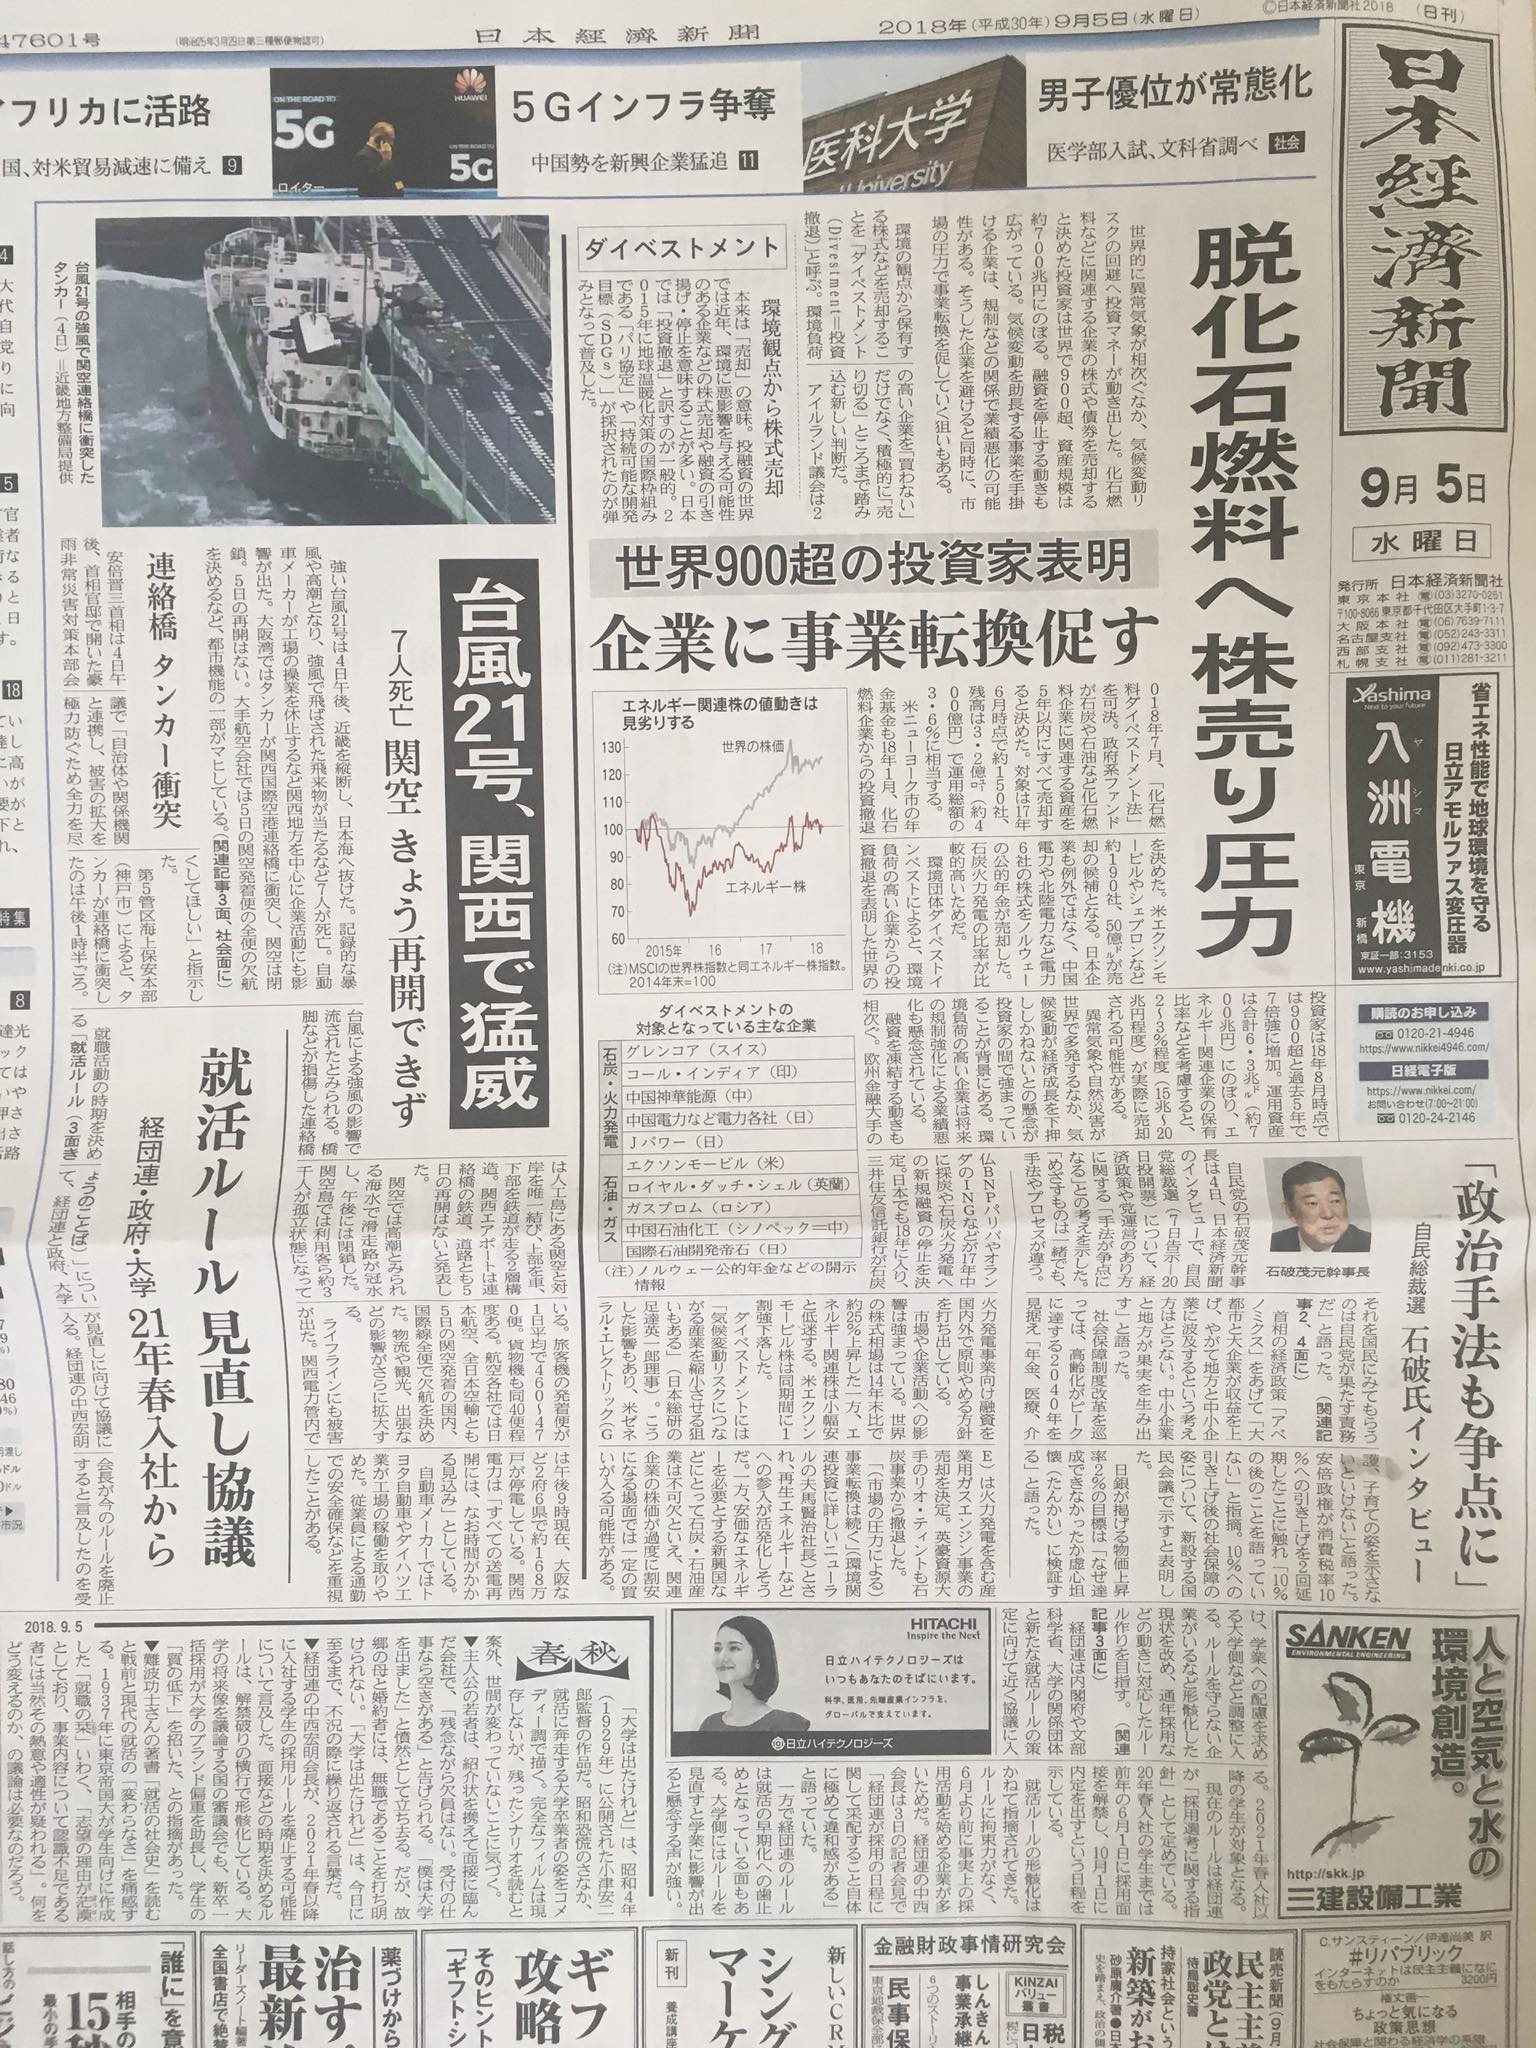 nikkei-2018-09-05